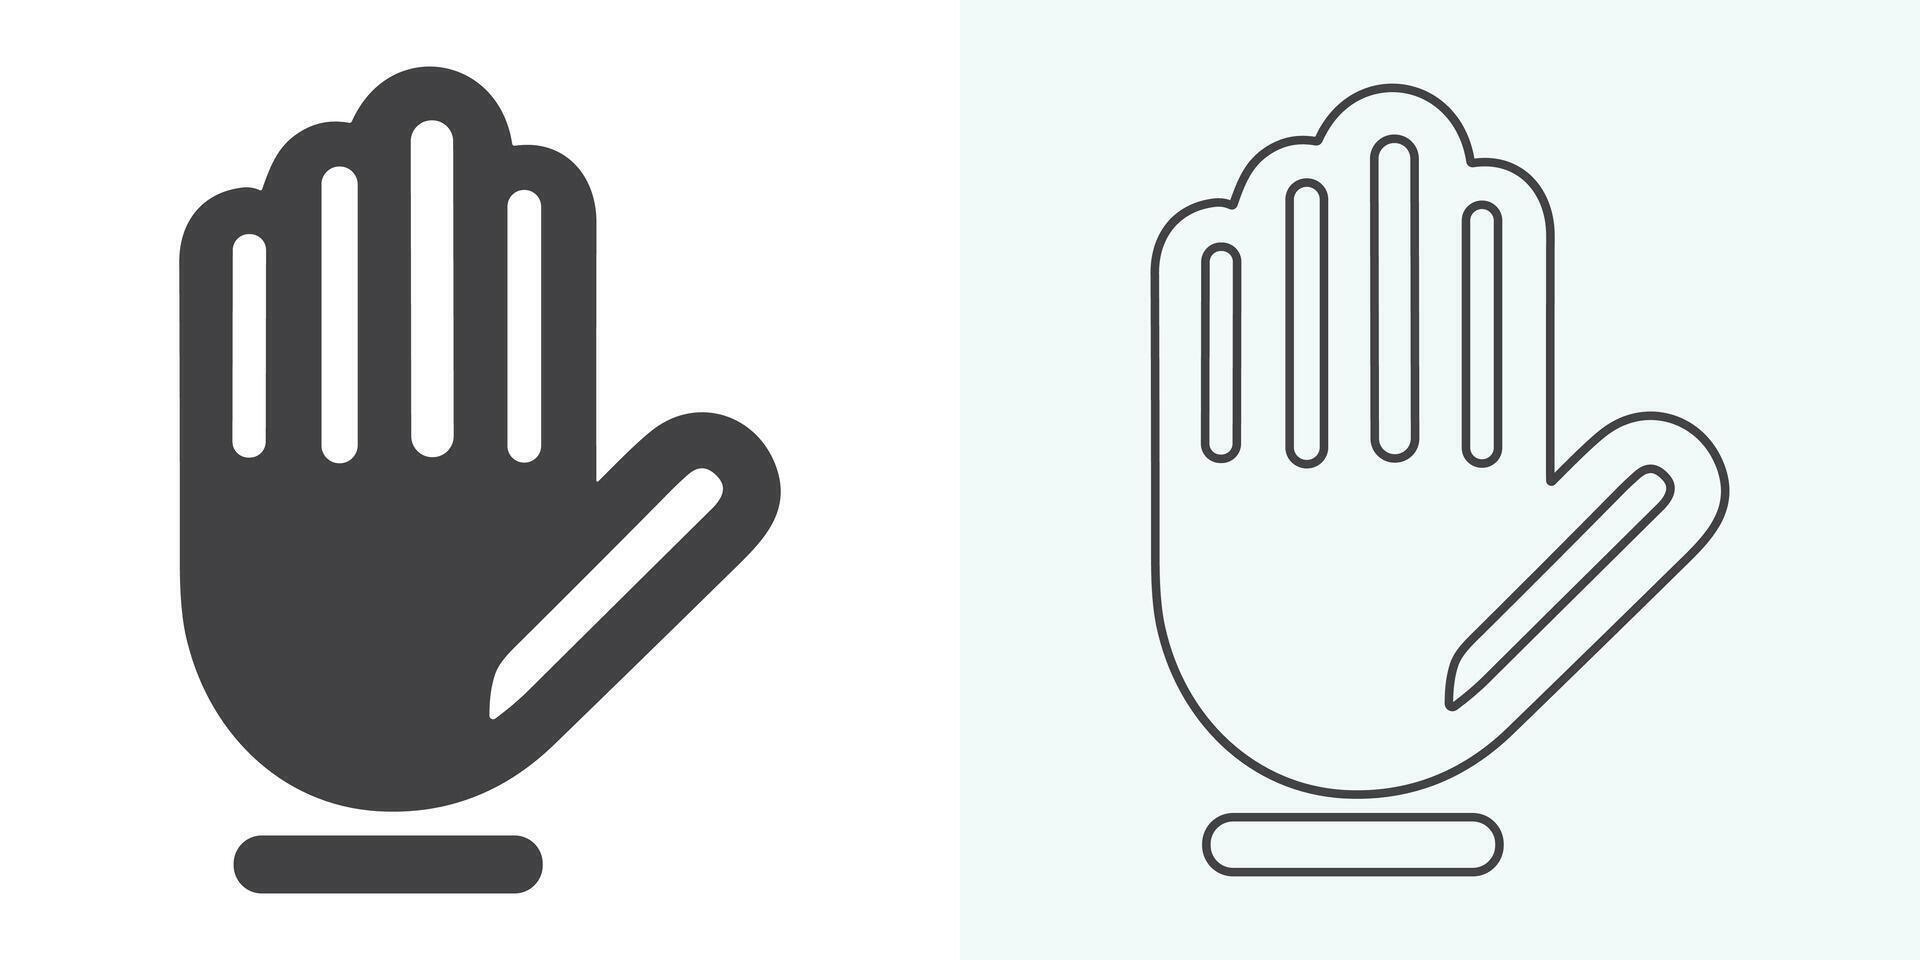 allemaal type van hand- emoji's, gebaren, stickers, emoticons vlak vector illustratie symbolen reeks